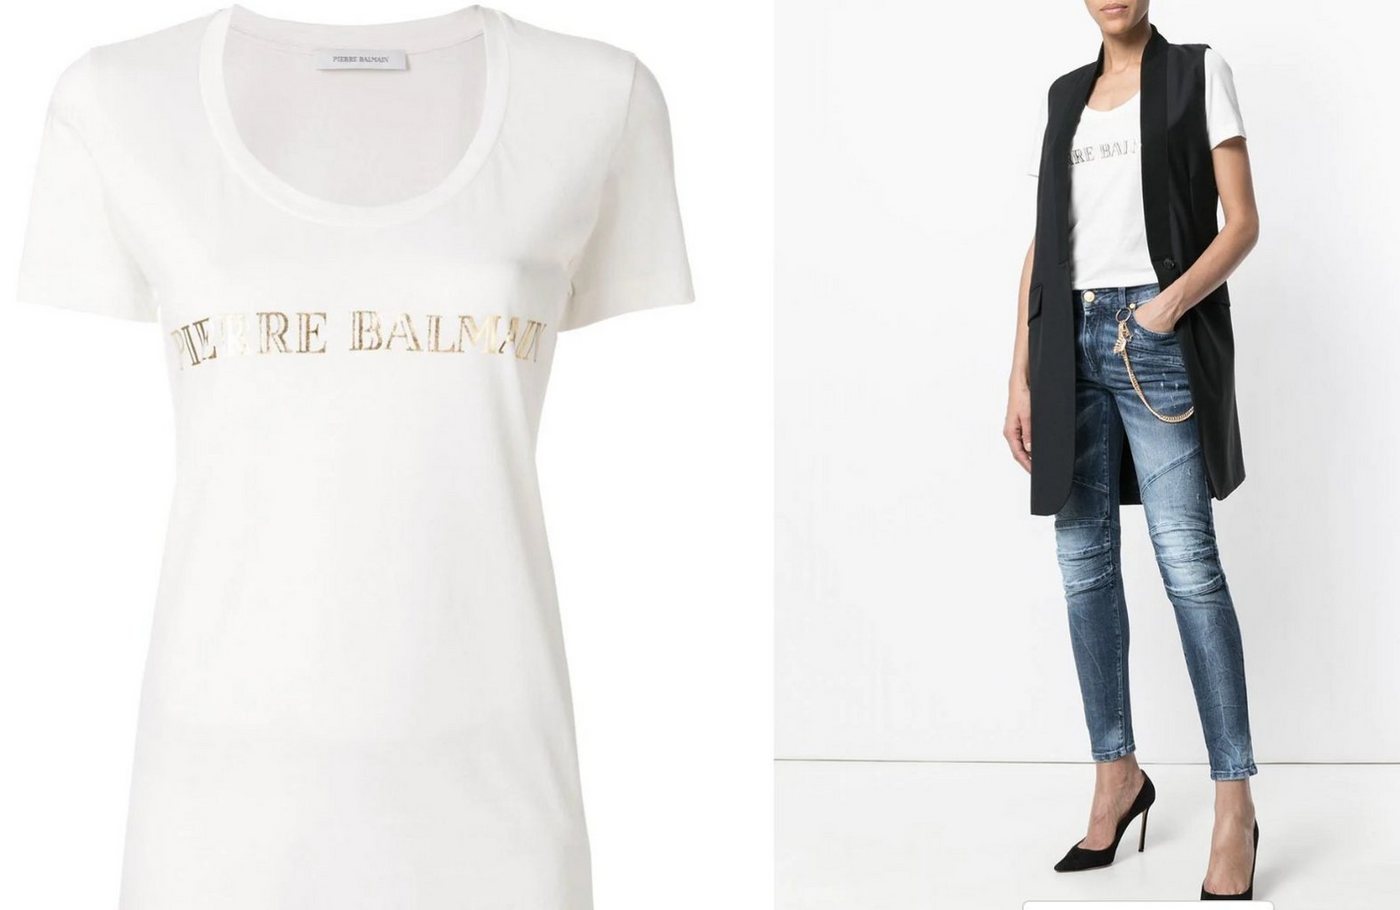 Balmain T-Shirt PIERRE BALMAIN ICONIC OFF-WHITE LOGOSHIRT LOGO BRAND SHIRT T-SHIRT TOP von Balmain